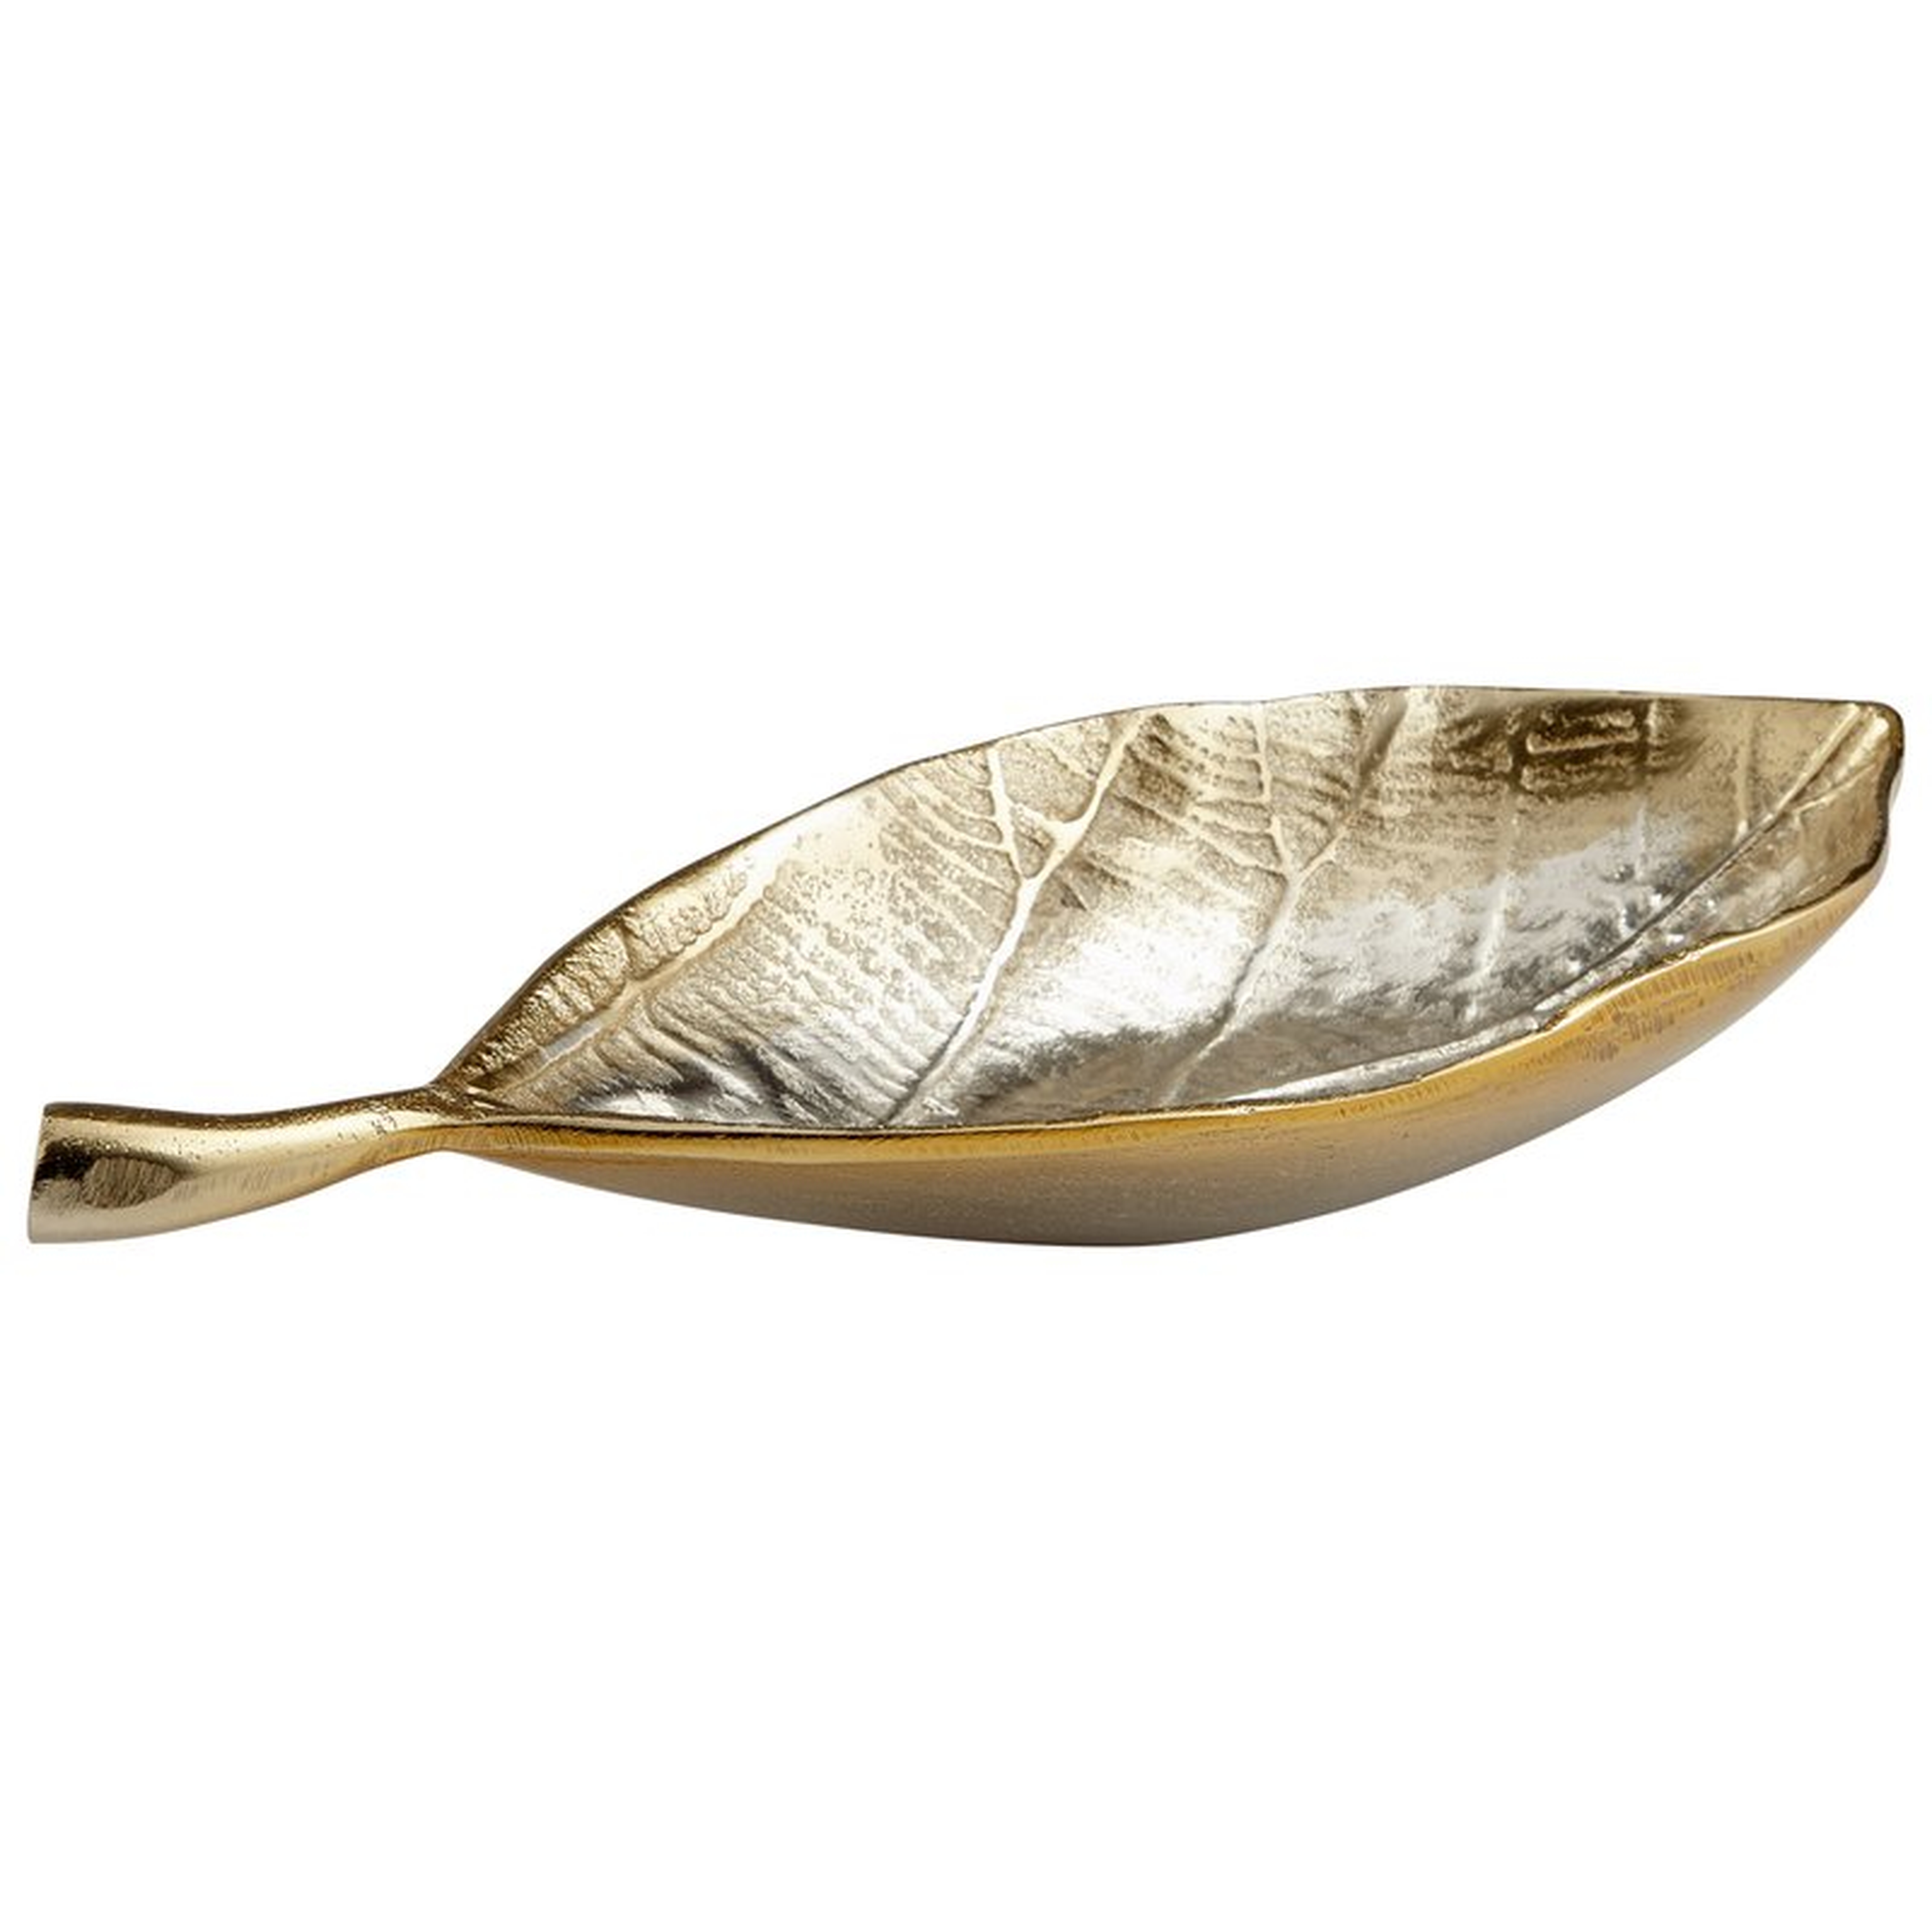 Mocking Leaf Tray, Silver/Gold - Wayfair